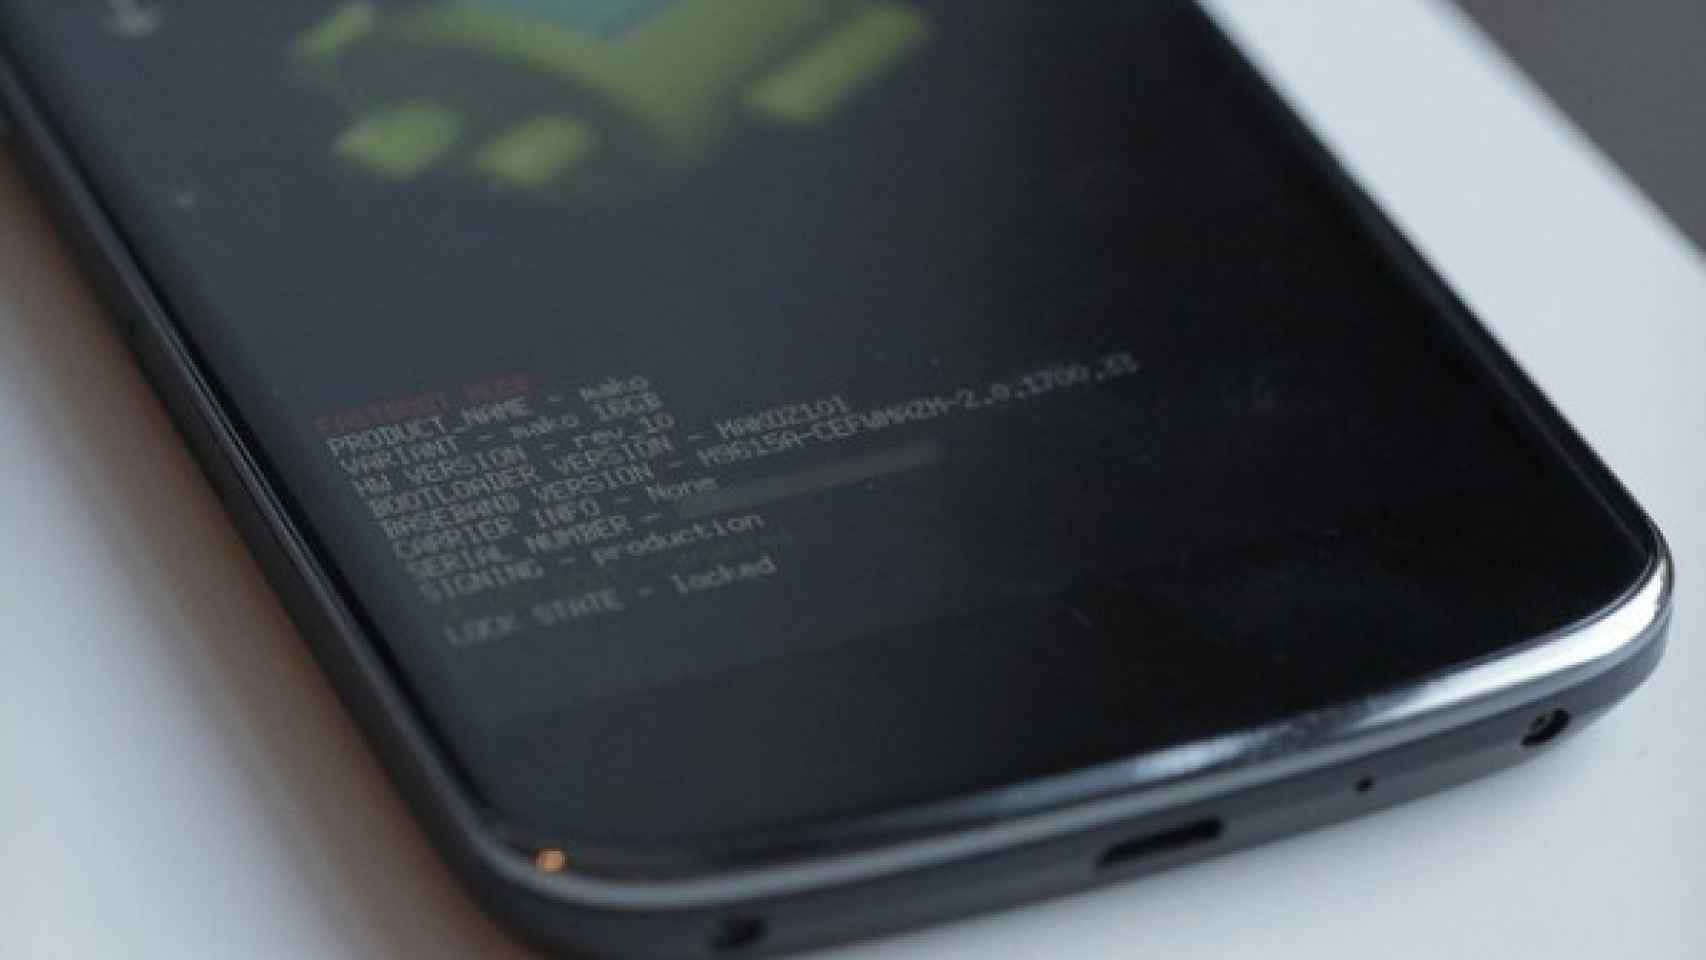 Las imágenes de restauración del Nexus 4 vuelven a estar disponibles en Google Developers